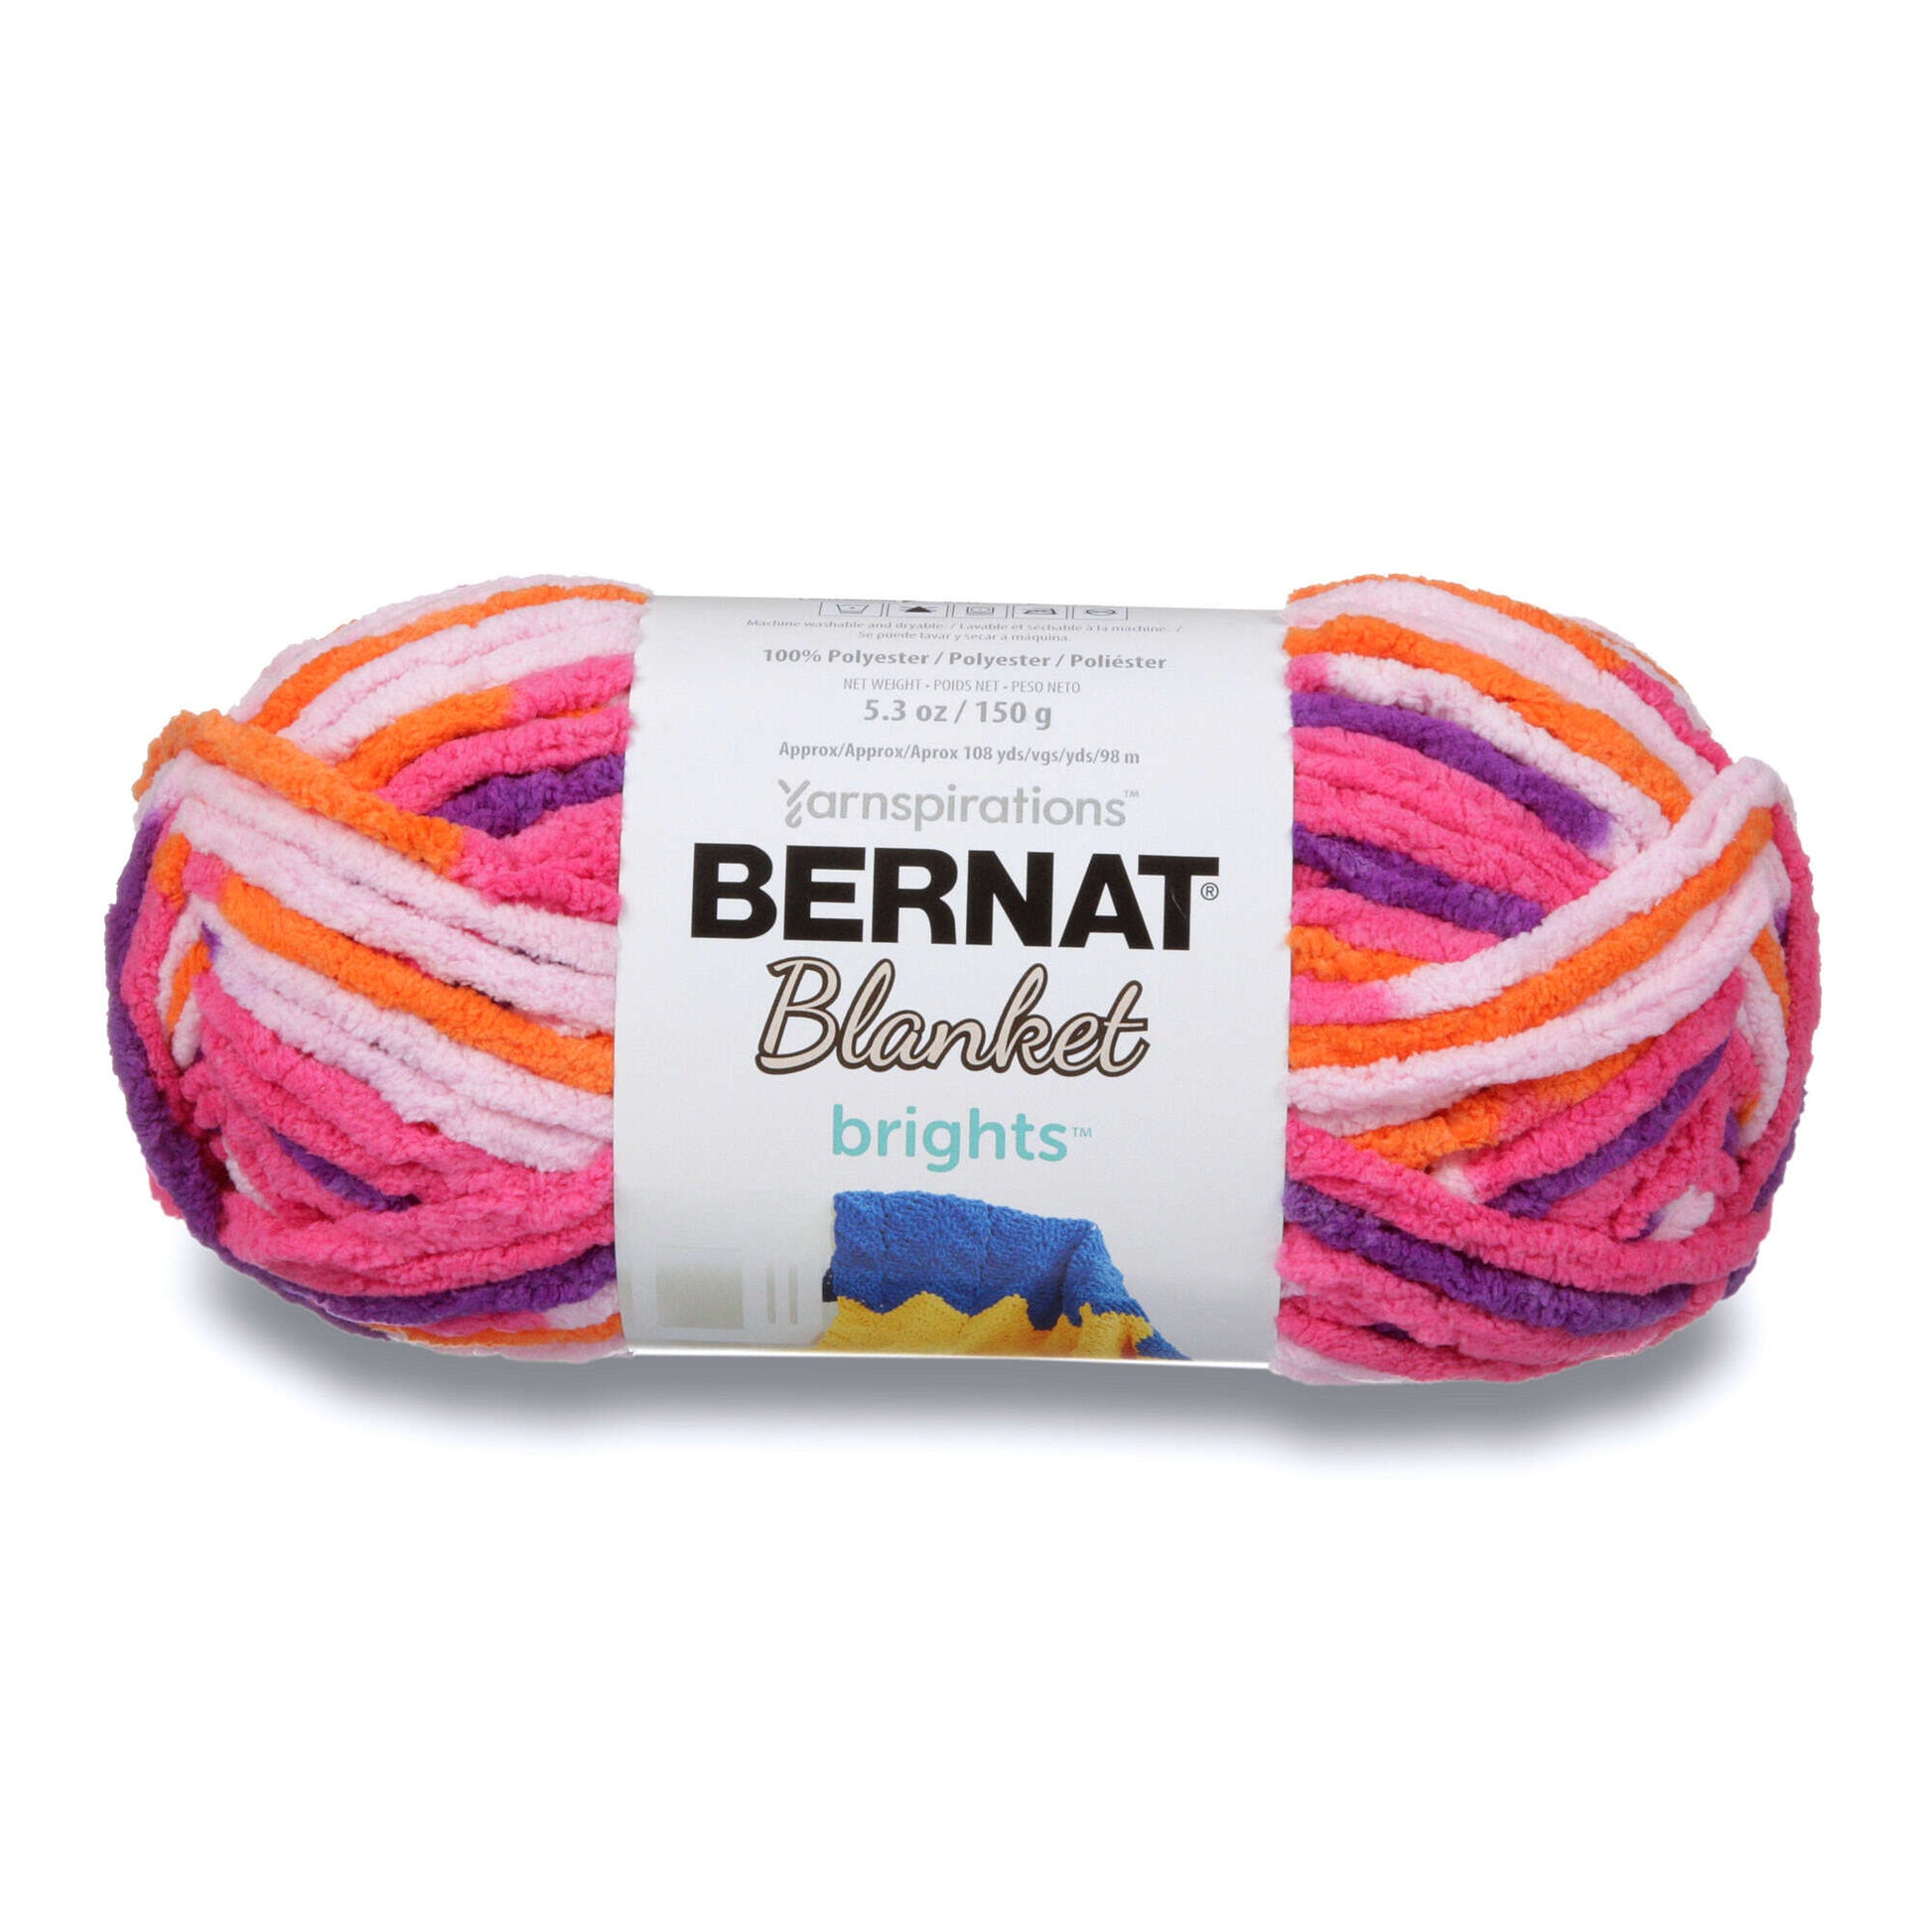 Bernat Blanket Brights Yarn Lemonade Variegated